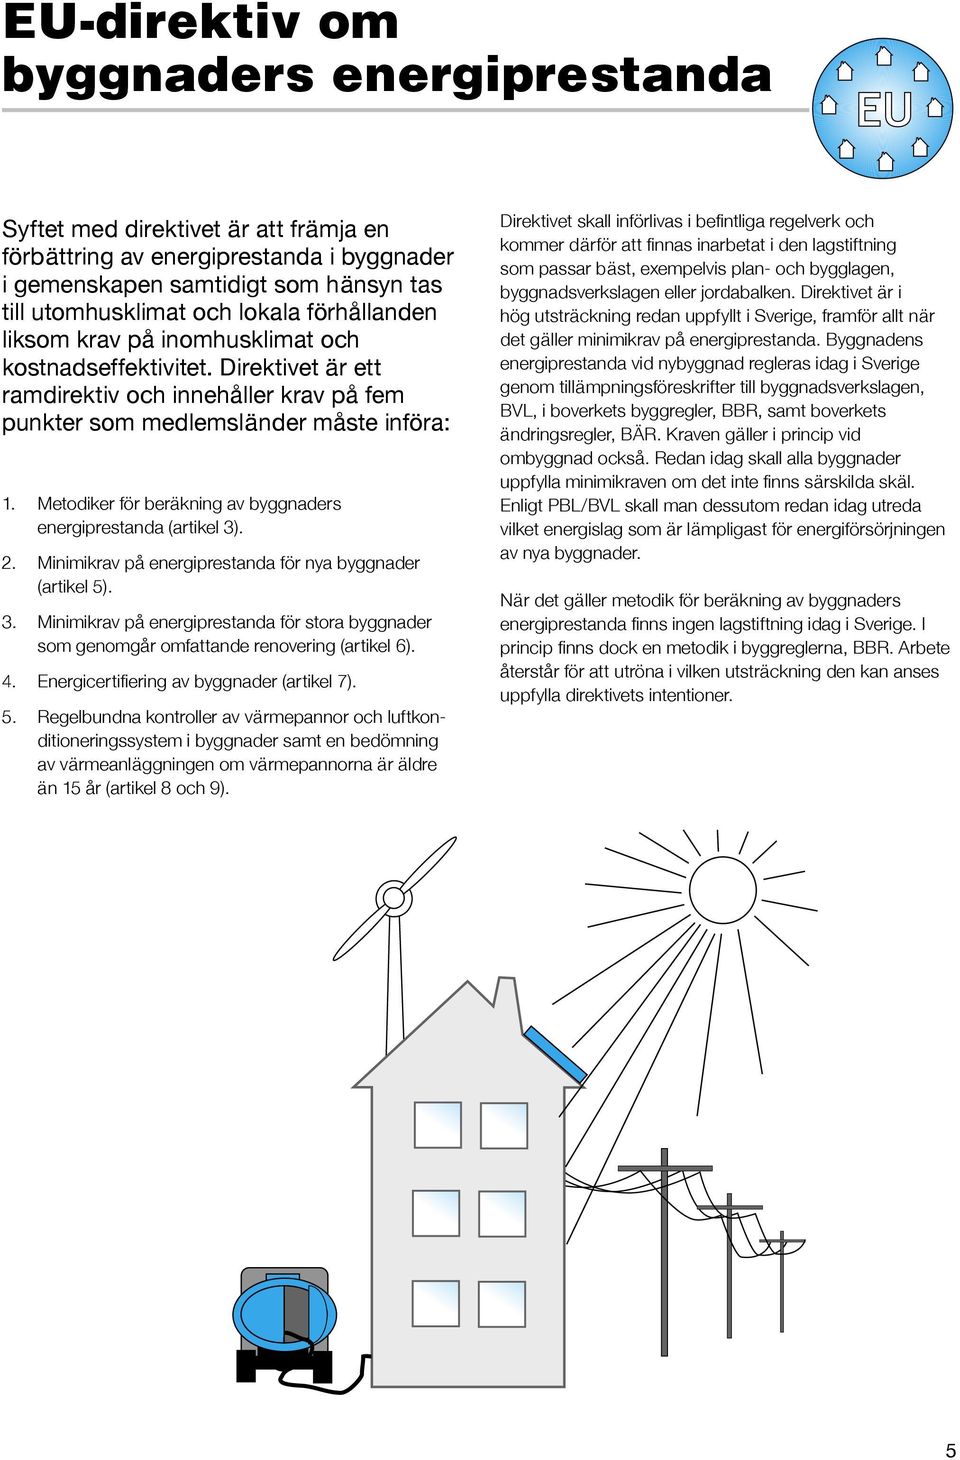 Metodiker för beräkning av byggnaders energiprestanda (artikel 3). 2. Minimikrav på energiprestanda för nya byggnader (artikel 5). 3. Minimikrav på energiprestanda för stora byggnader som genomgår omfattande renovering (artikel 6).